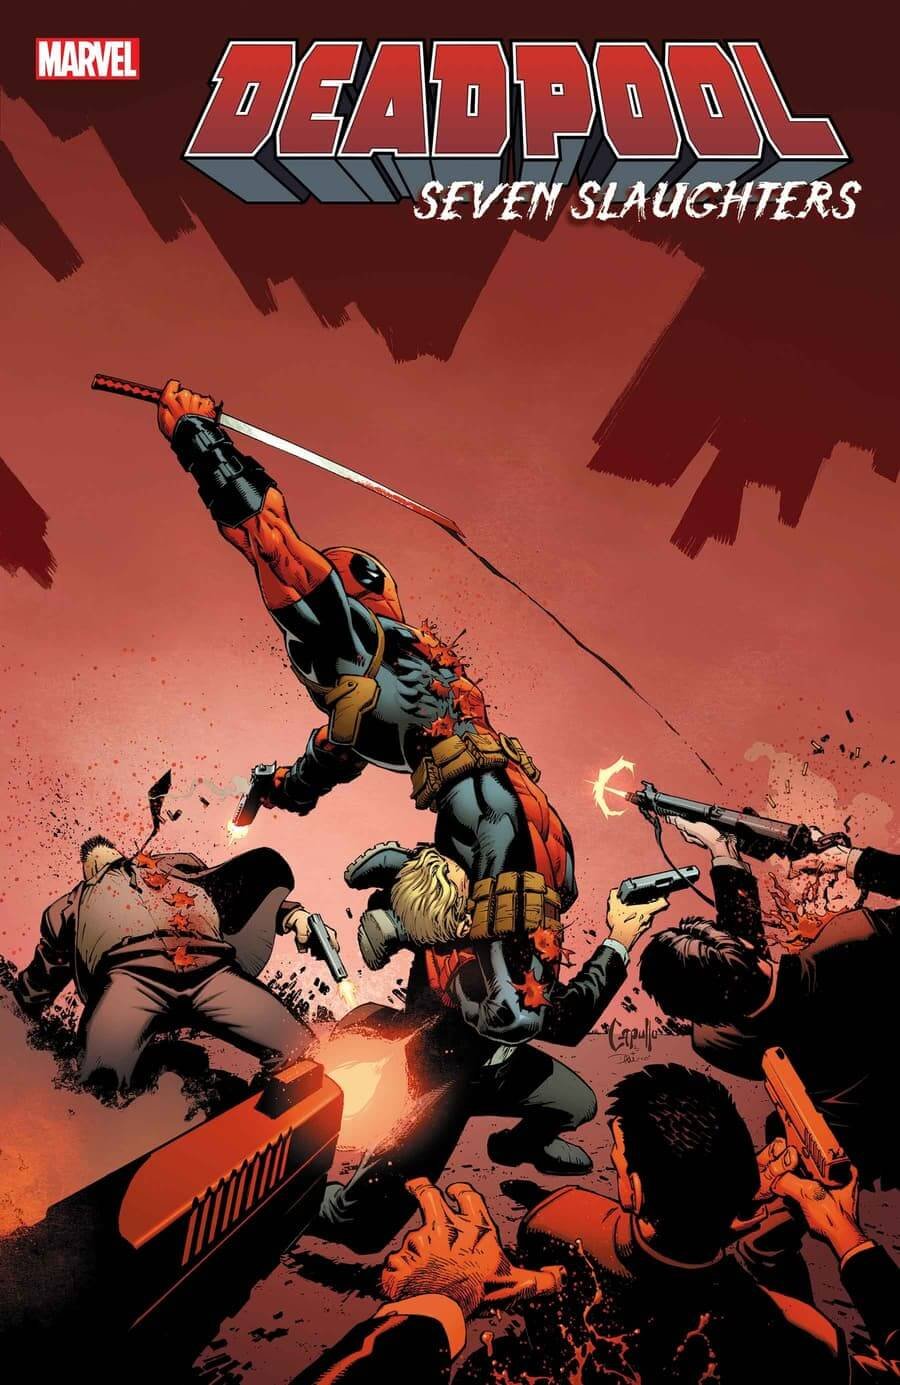 Couverture de Deadpool : Seven Slaughters, de Greg Capullo, relatant une semaine de meurtres dans la vie de Wade Wilson.